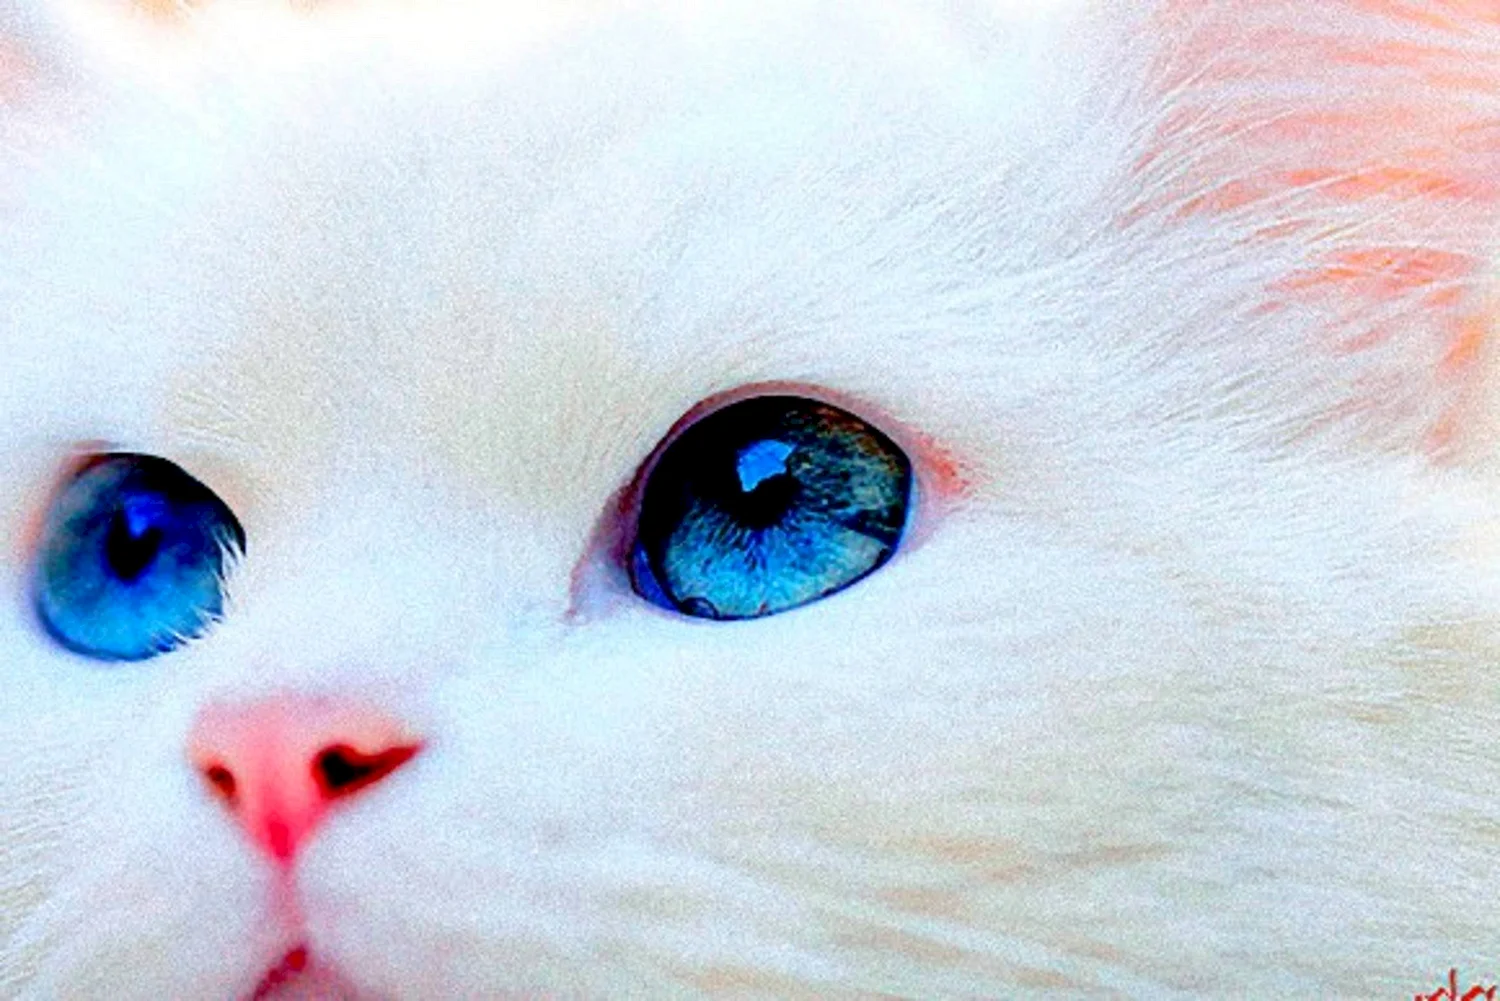 Белый кот с голубыми глазами